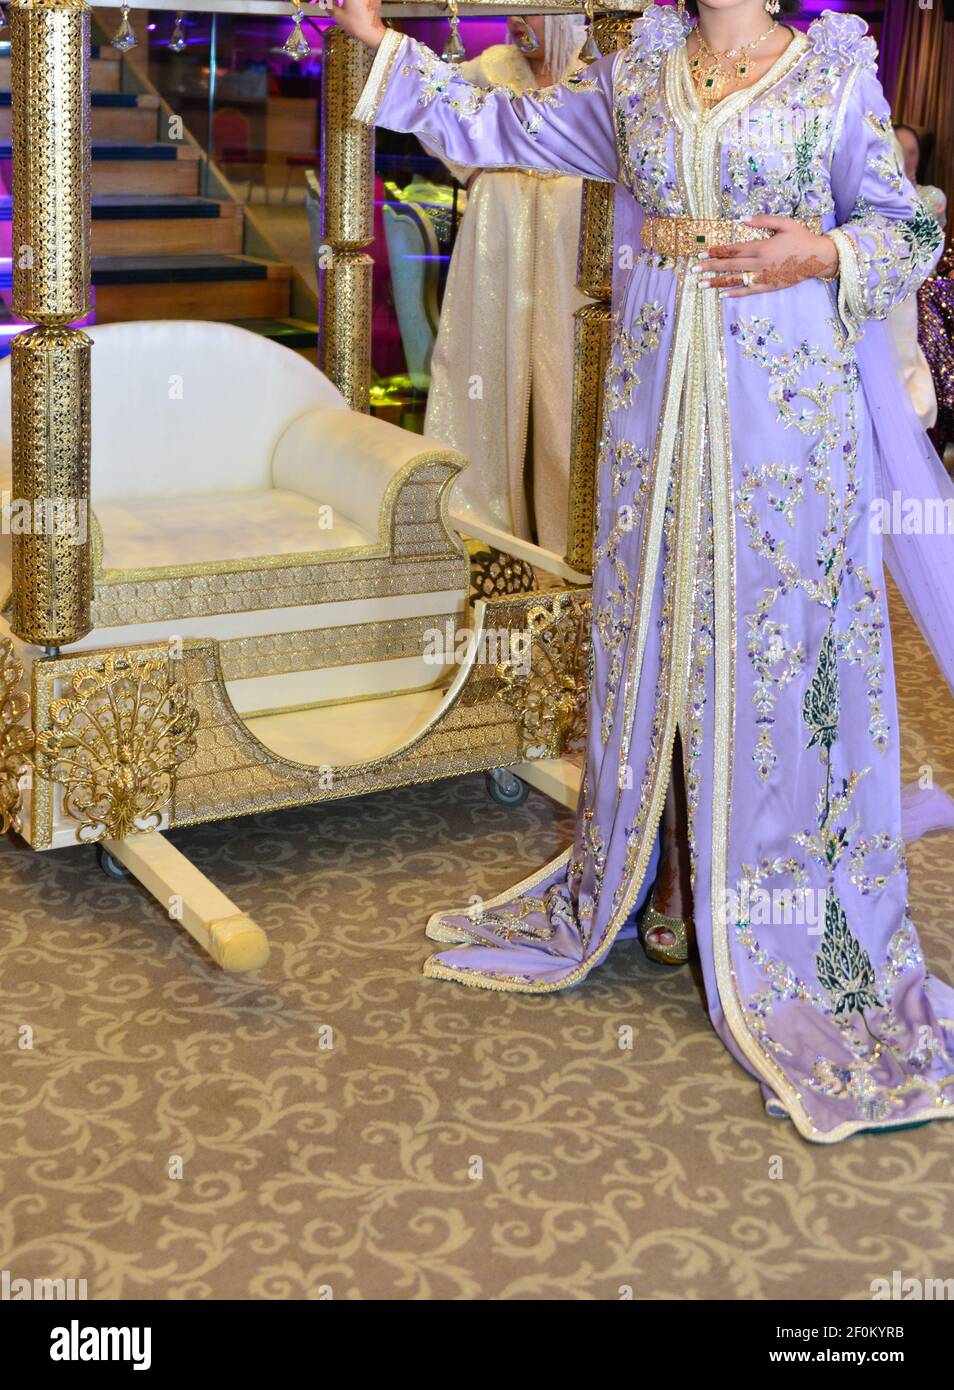 Eine marokkanische Braut sitzt auf dem Hochzeitsstuhl in der traditionellen  marokkanischen Kleid. Der Kaftan Stockfotografie - Alamy